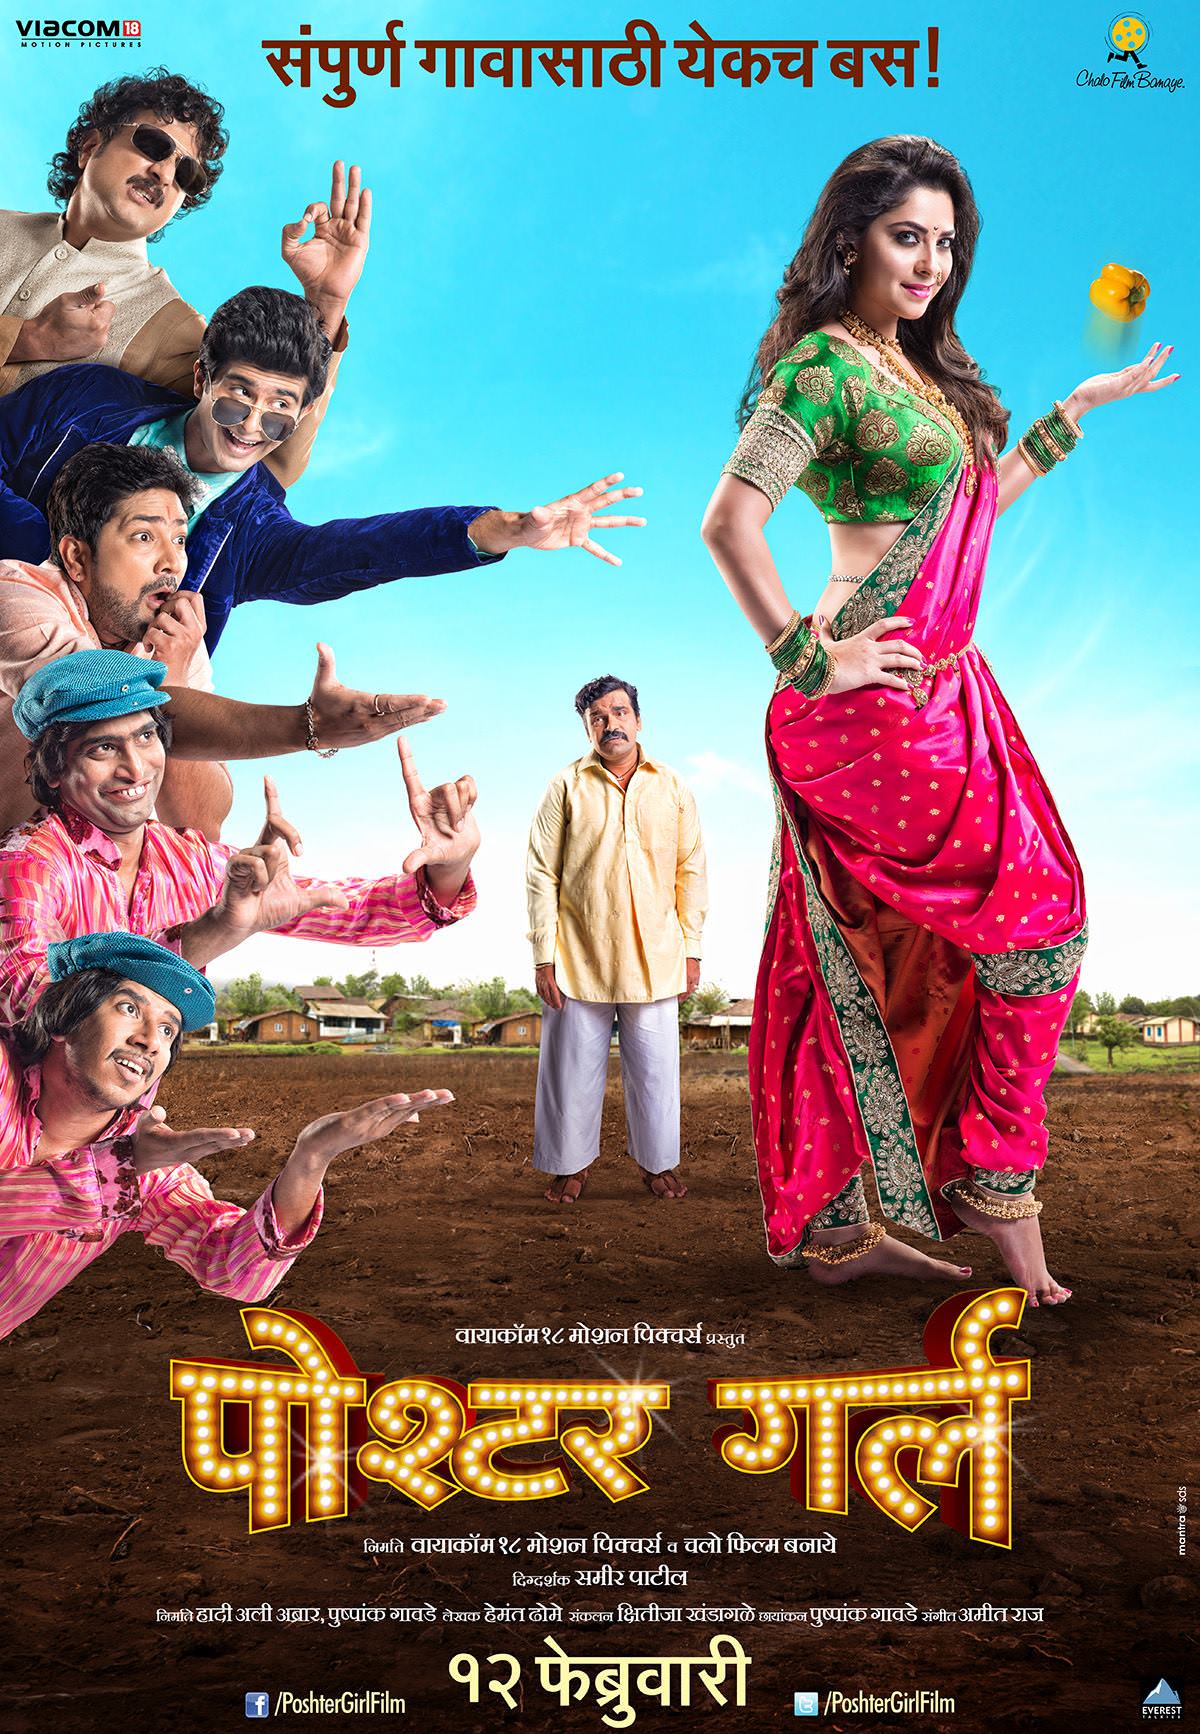 Poshter Girl 2016 Marathi Movie Cast Crew Story Trailer Release Date